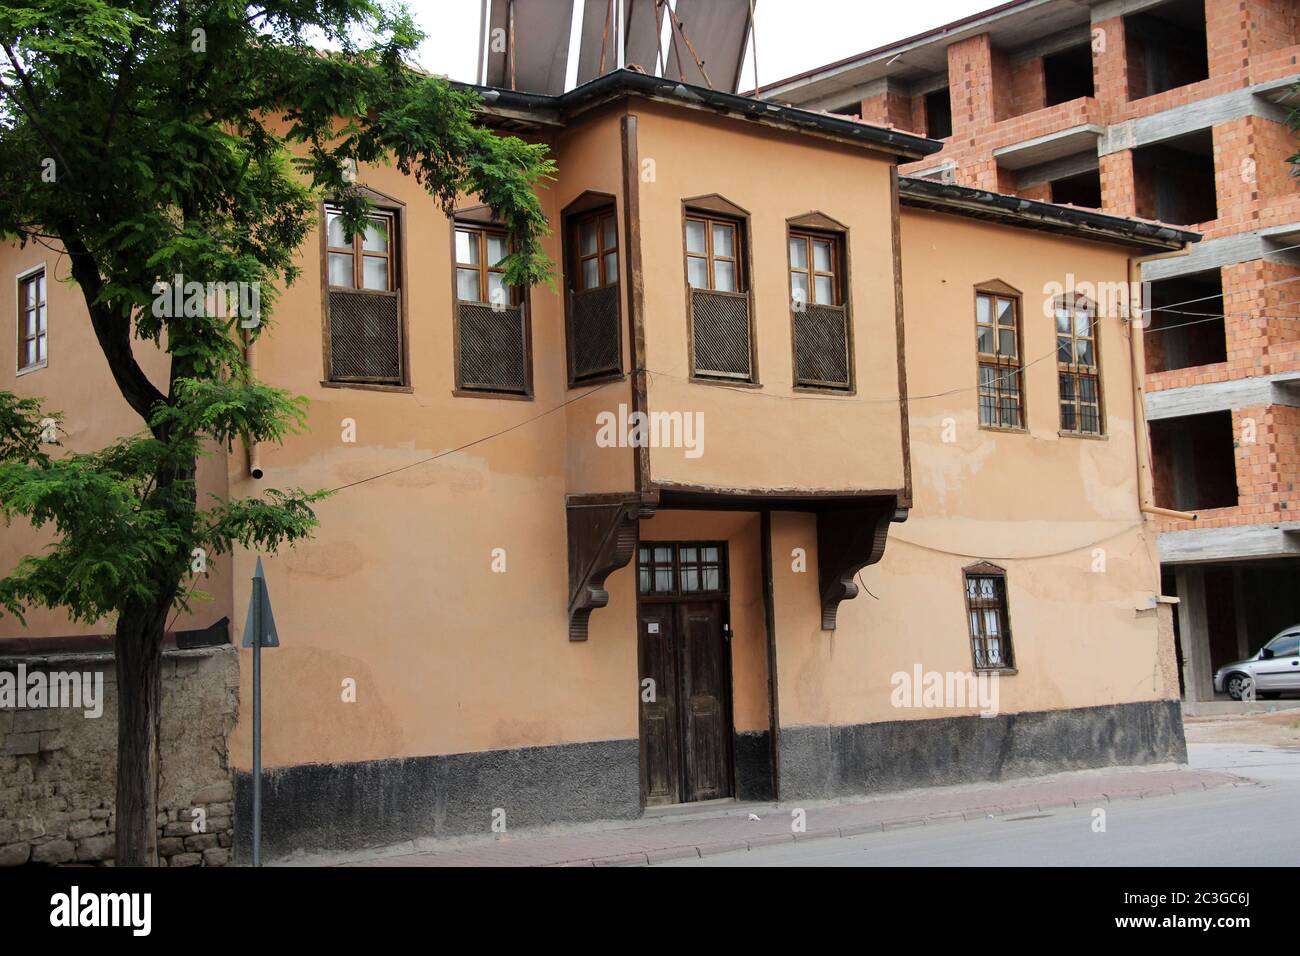 Una casa tradizionale a Konya. La casa è stata costruita in mattoni di fango alla fine del 20 ° secolo. Le tradizionali case Konya consistono solitamente in due piani. Foto Stock